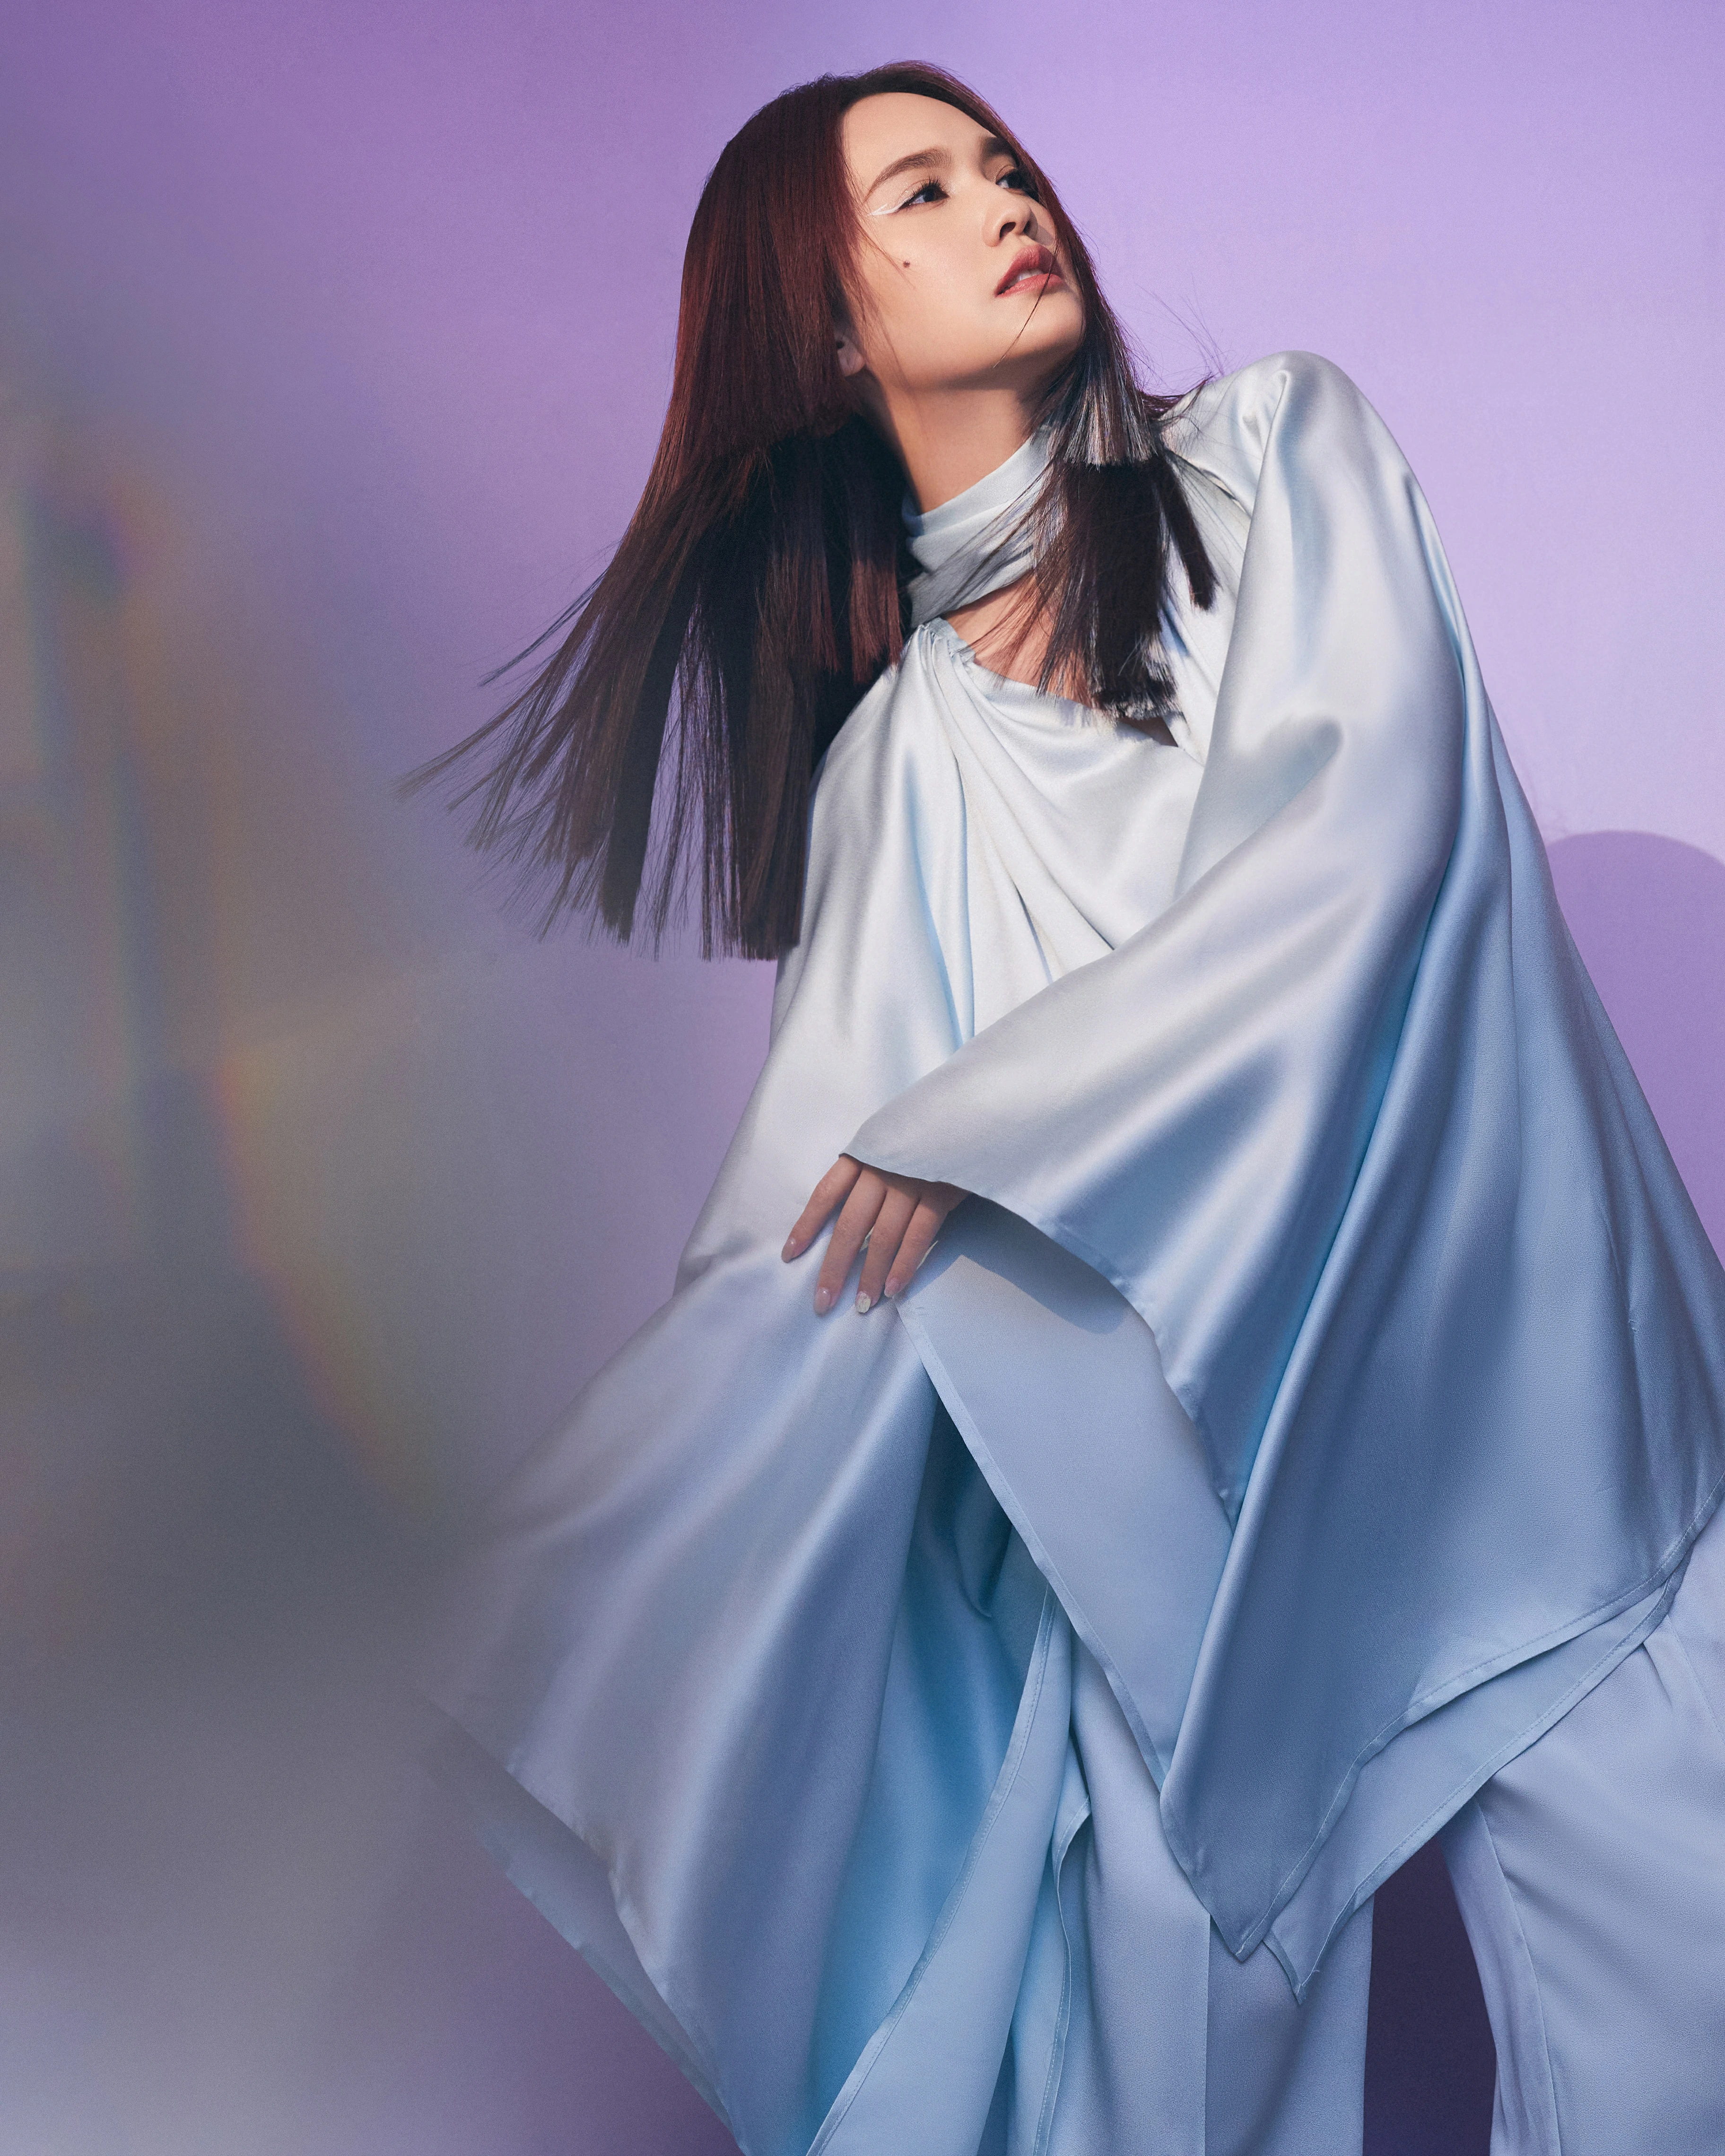 杨丞琳亮相本周《闪光的乐队》 挑染公主切造型带来《天堂》舞台,12